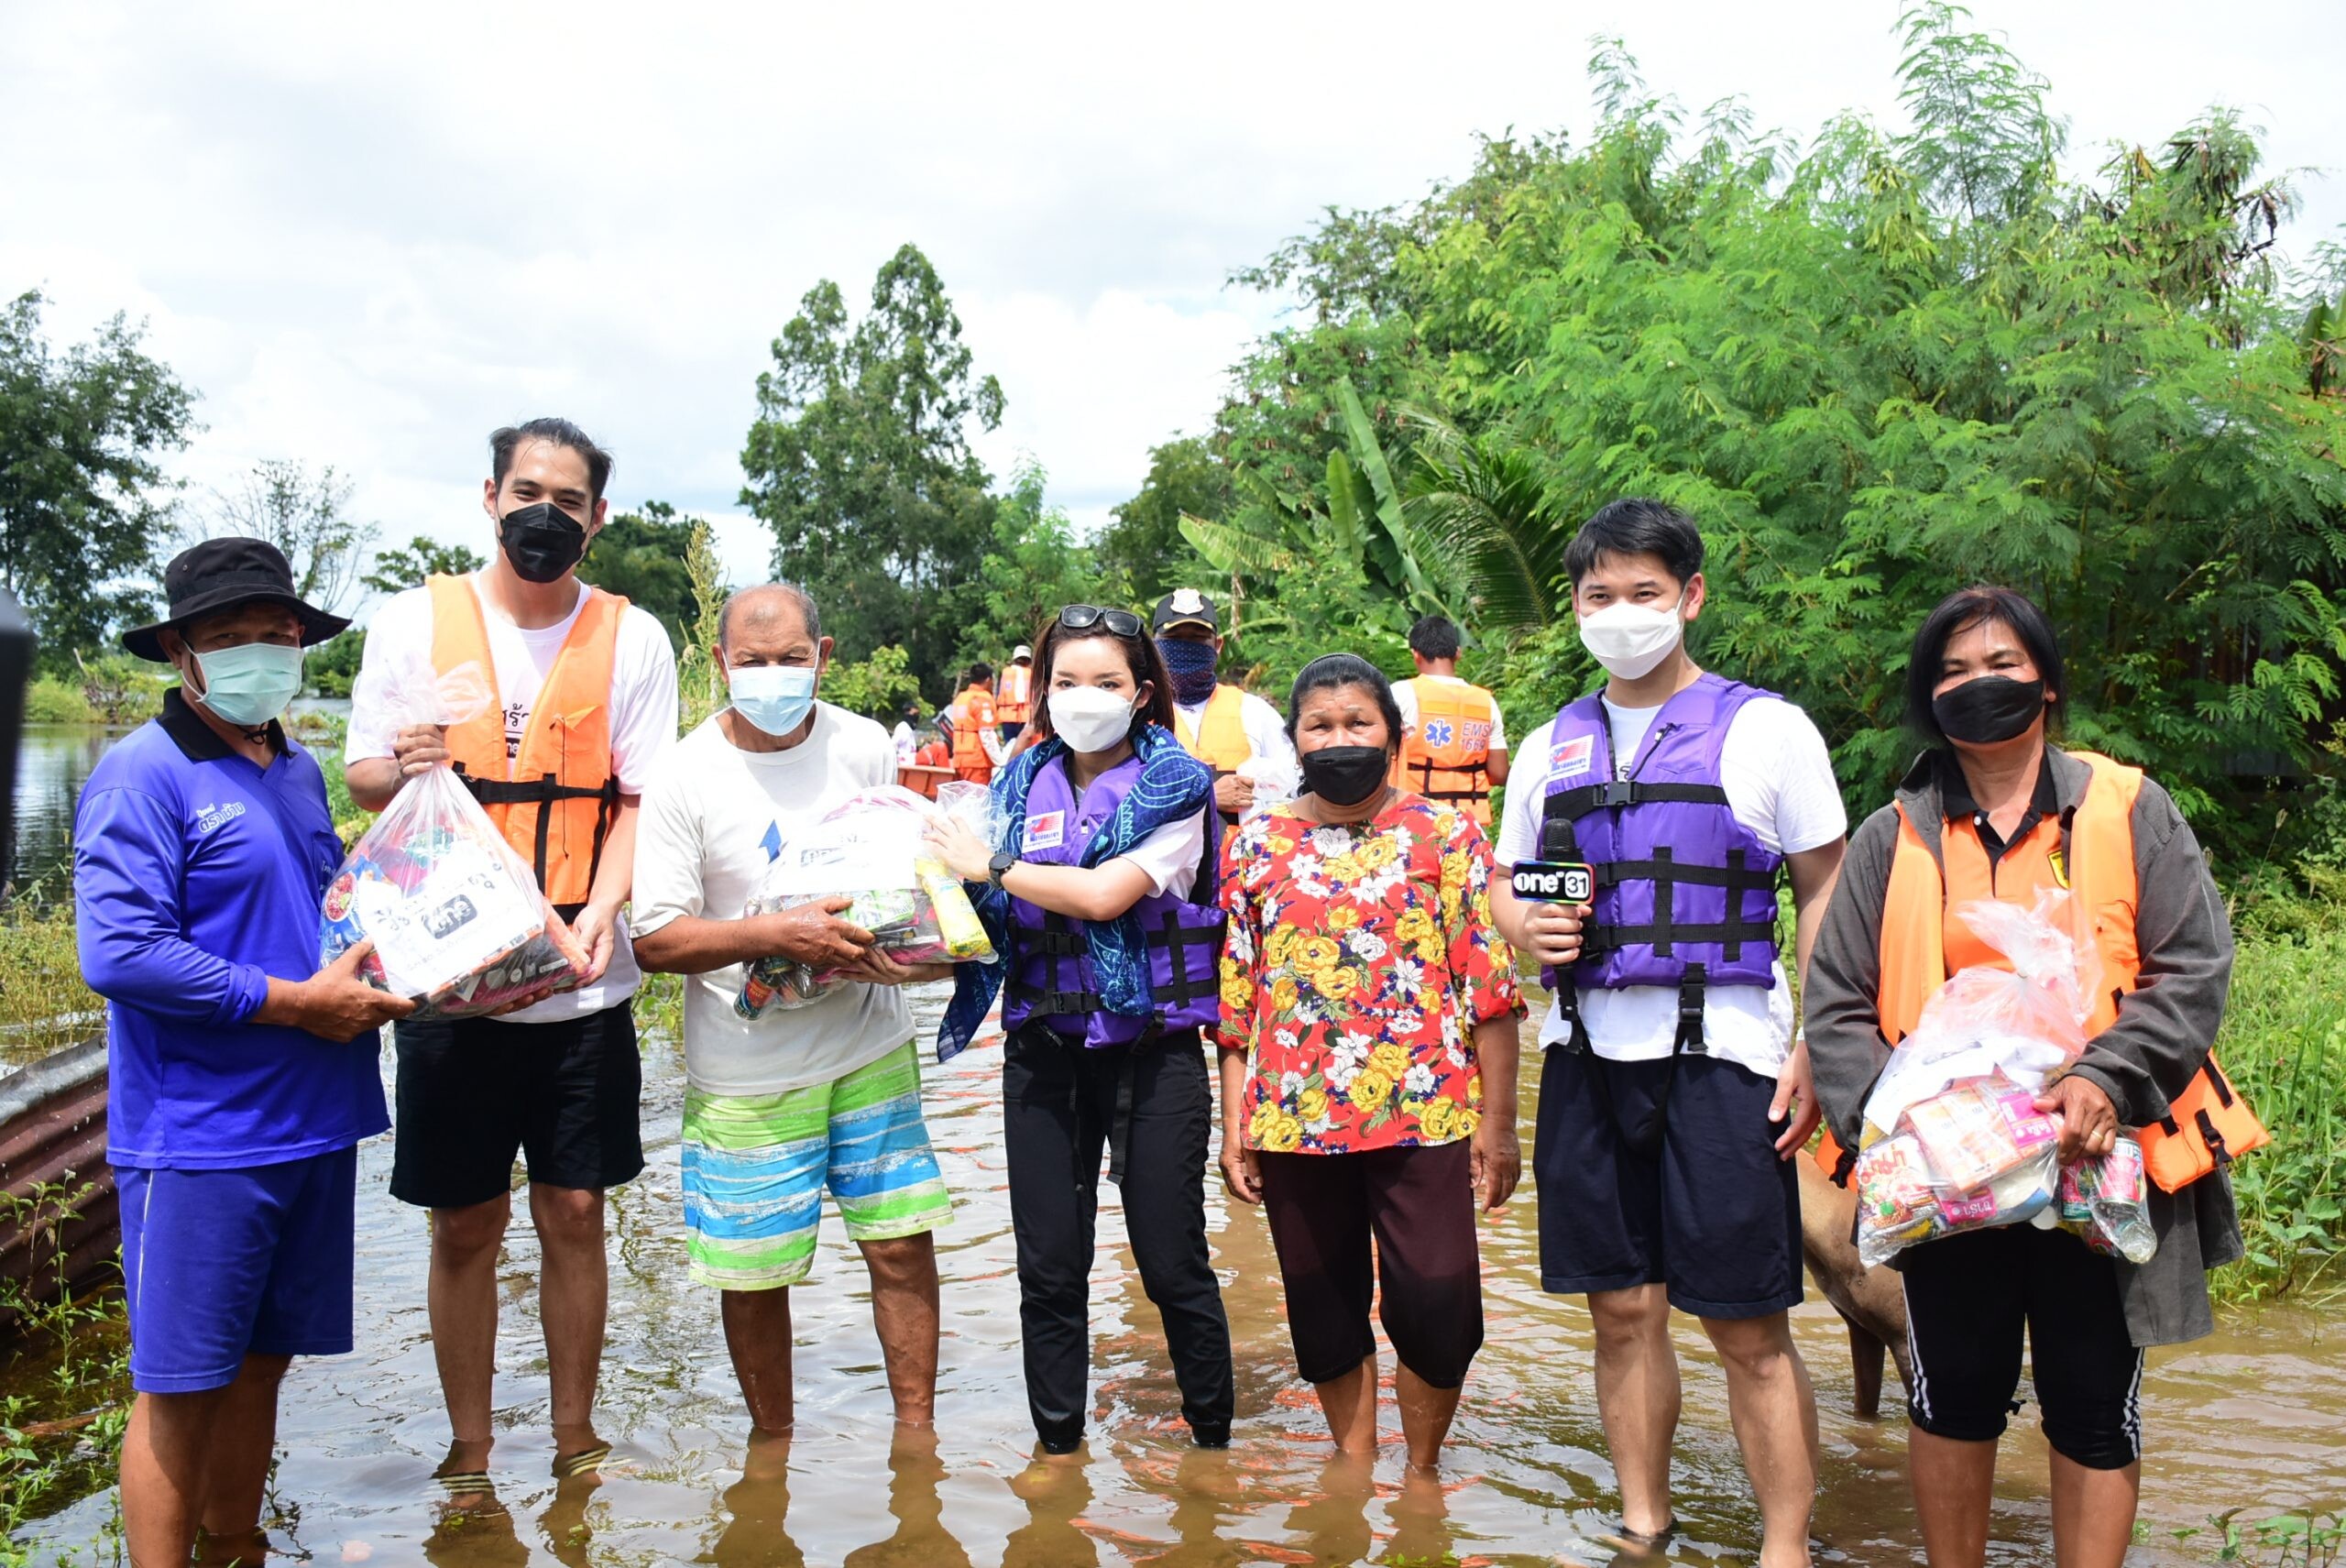 "วันสร้างสุข สู้ภัยน้ำท่วม" เร่งลงพื้นที่มอบถุงยังชีพ ช่วยเหลือผู้ประสบอุทกภัย โคราช